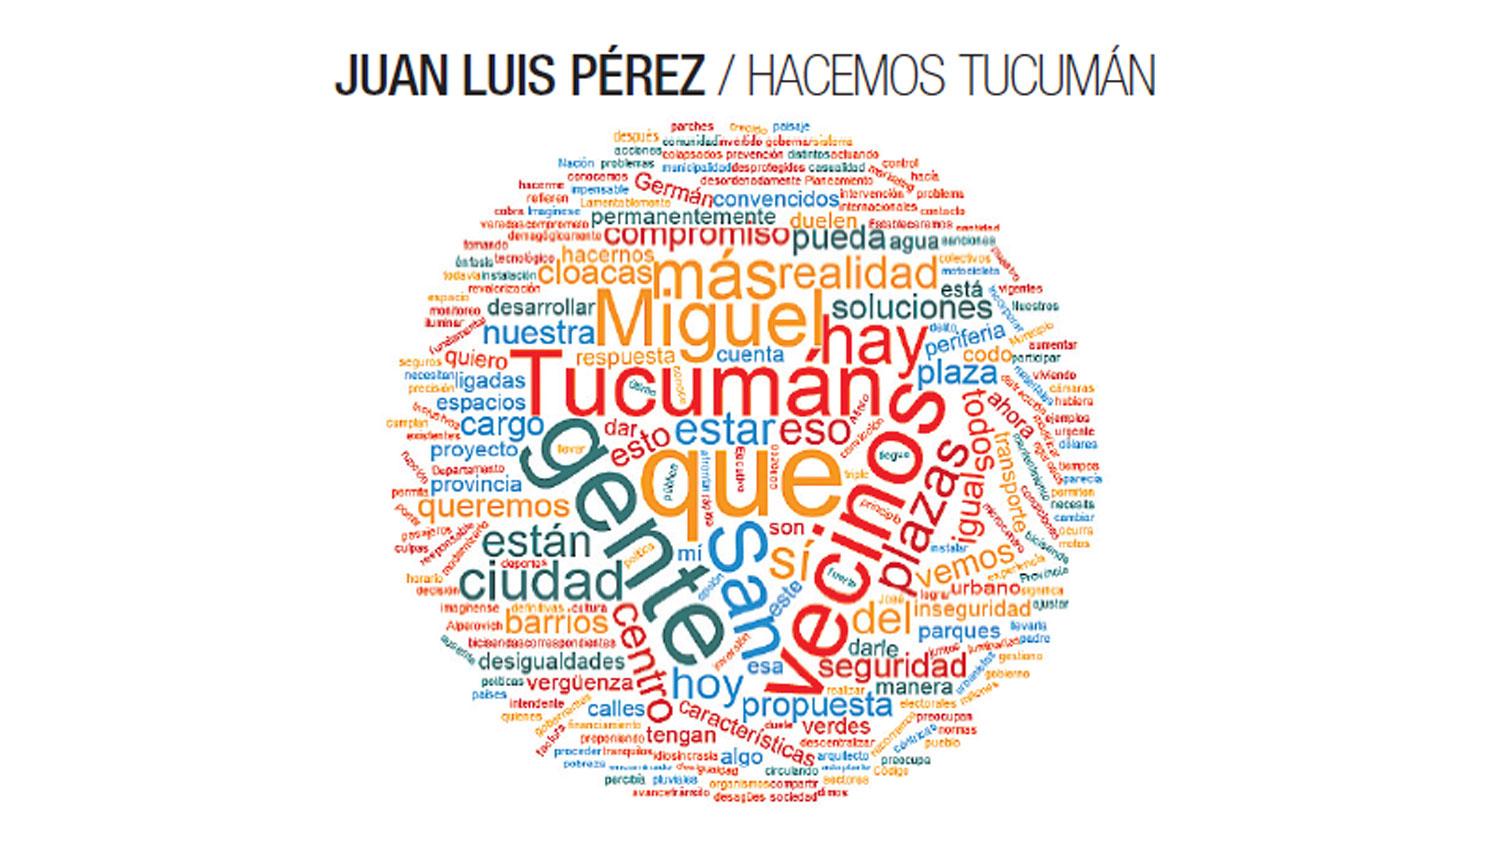 Juan Luis Pérez / Hacemos Tucumán